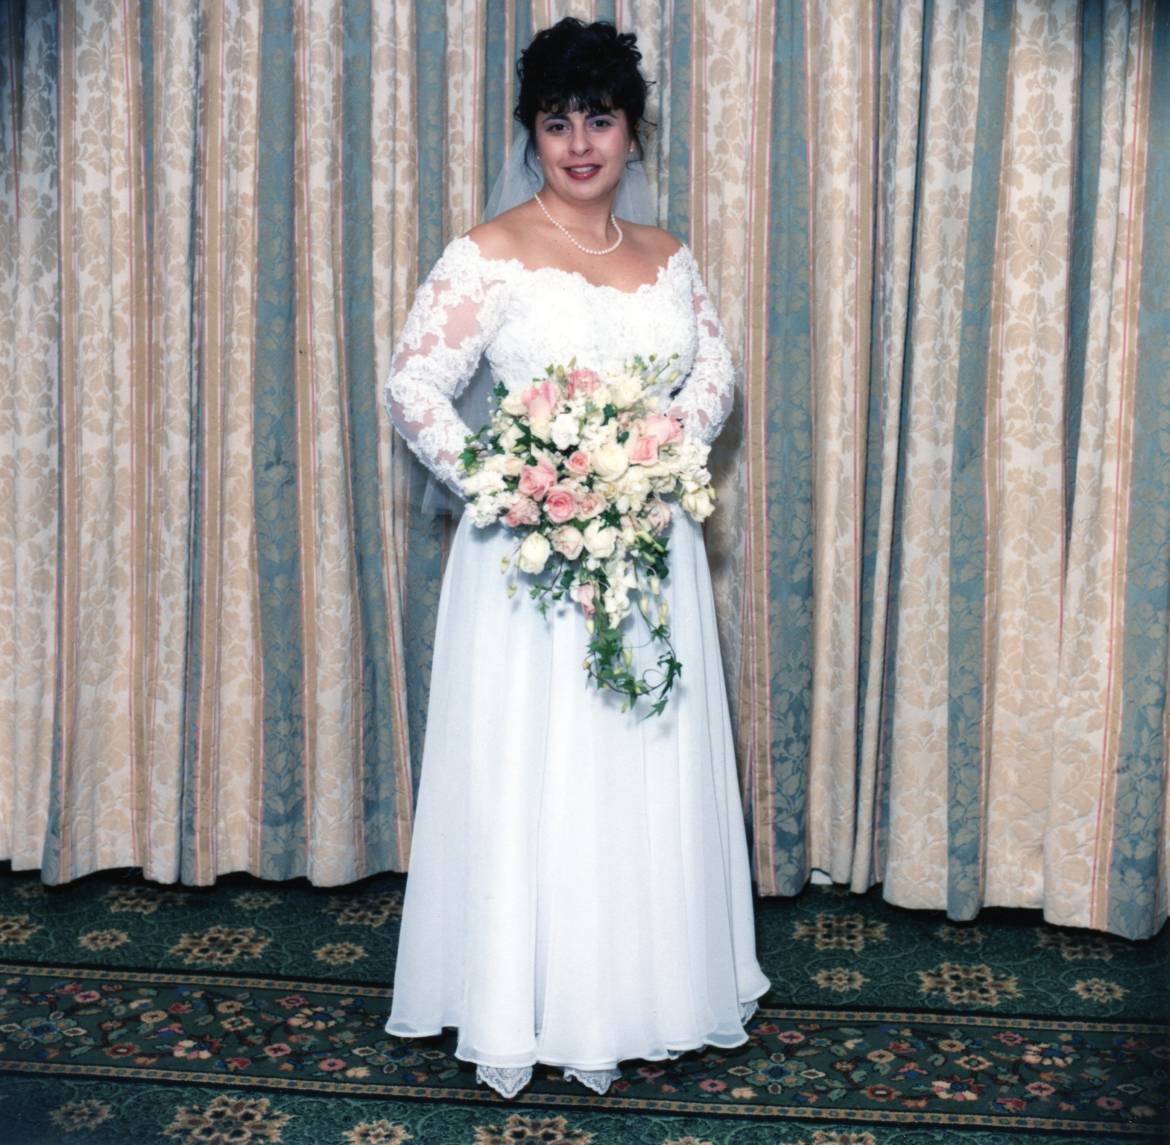 Bride-picture-FBJ.jpg